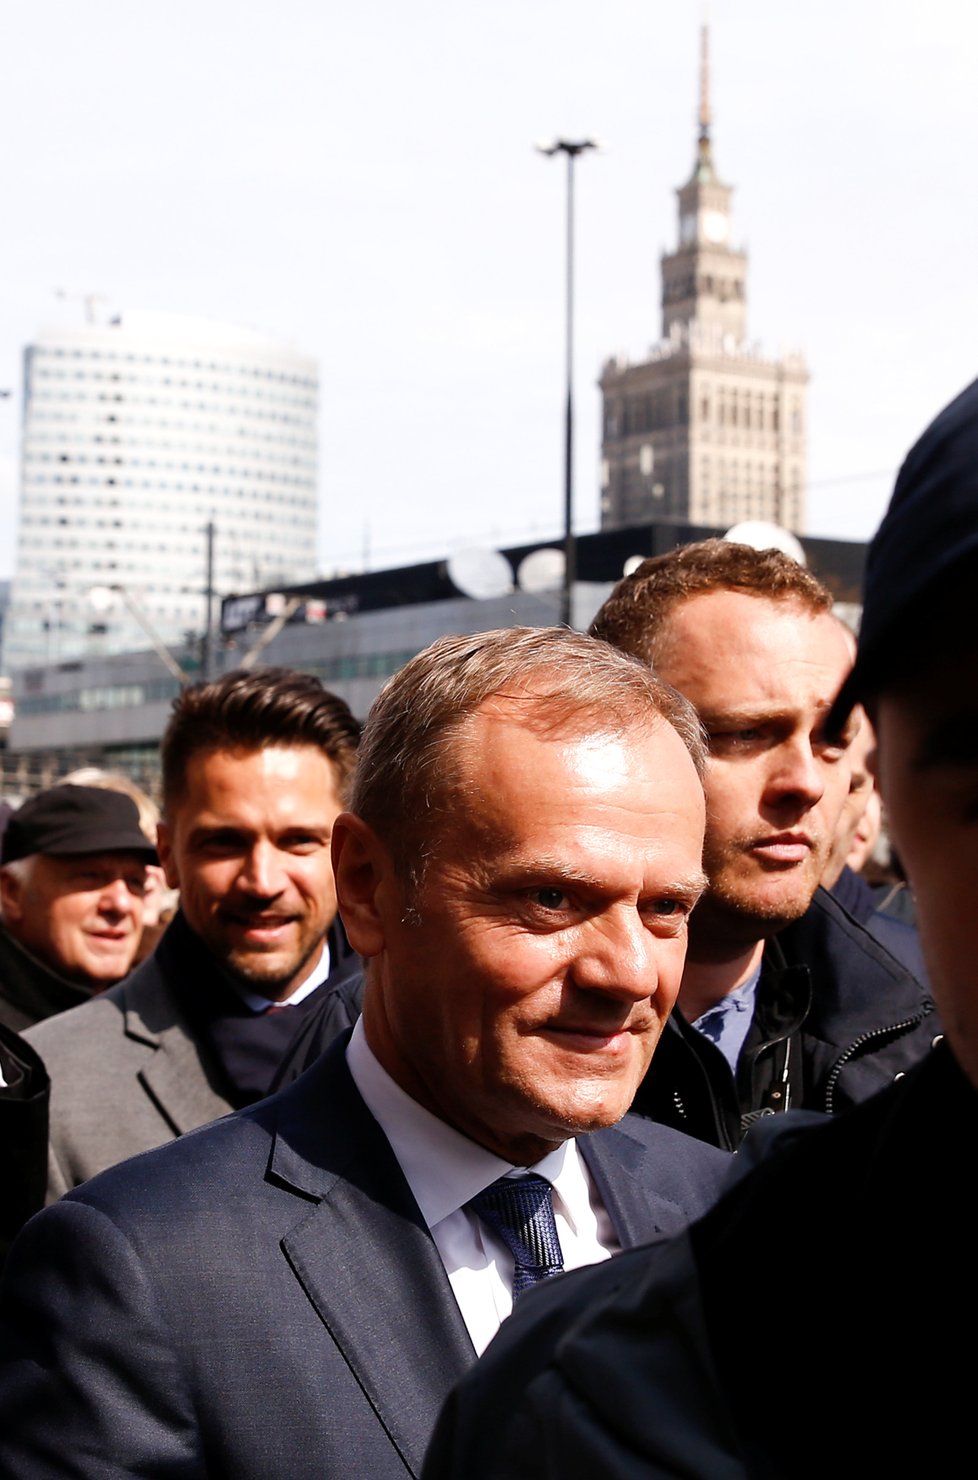 Na Donalda Tuska čekaly na varšavském nádraží stovky příznivců.